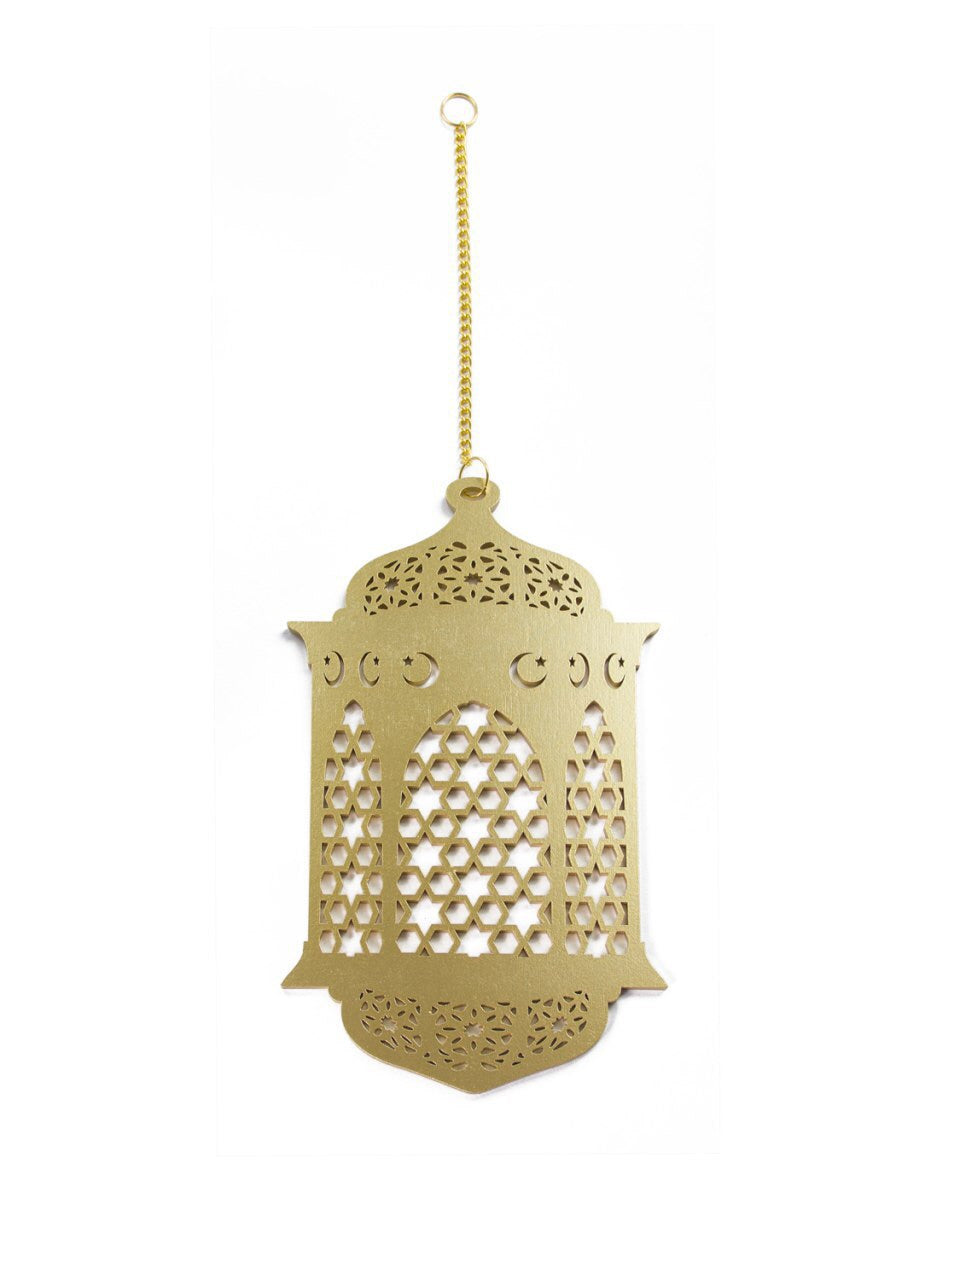 Lantern/Crescent Hanging Decorations - Individual - Anafiya Gifts